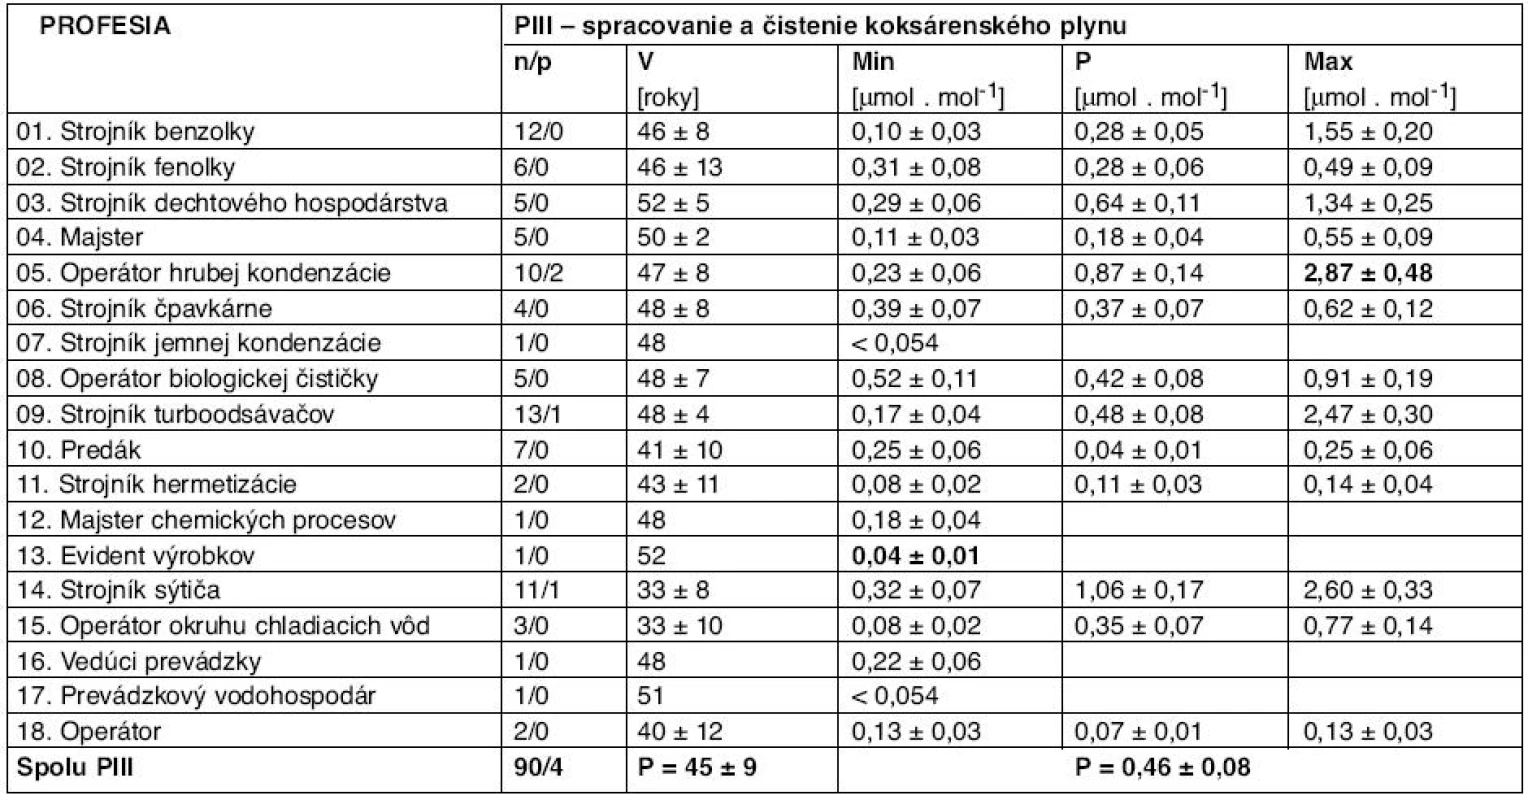 Výsledky stanovenia koncentrácie 1-HP prepočítané na kreatinín pre všetky profesie na PIII